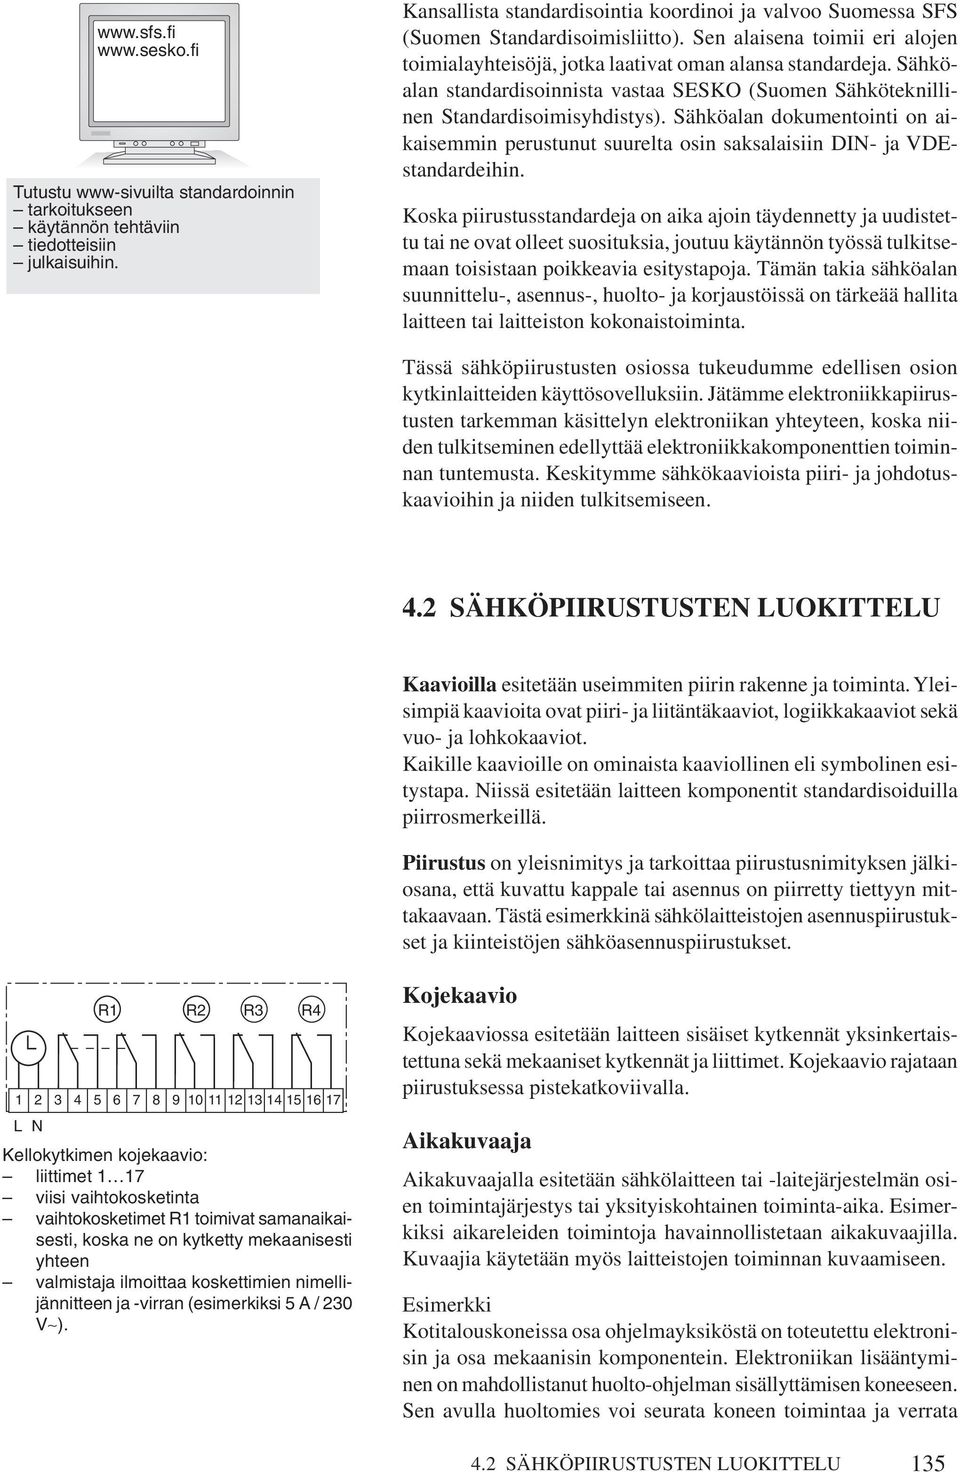 Sähköalan standardisoinnista vastaa SESKO (Suomen Sähköteknillinen Standardisoimisyhdistys). Sähköalan dokumentointi on aikaisemmin perustunut suurelta osin saksalaisiin DI- ja VDEstandardeihin.